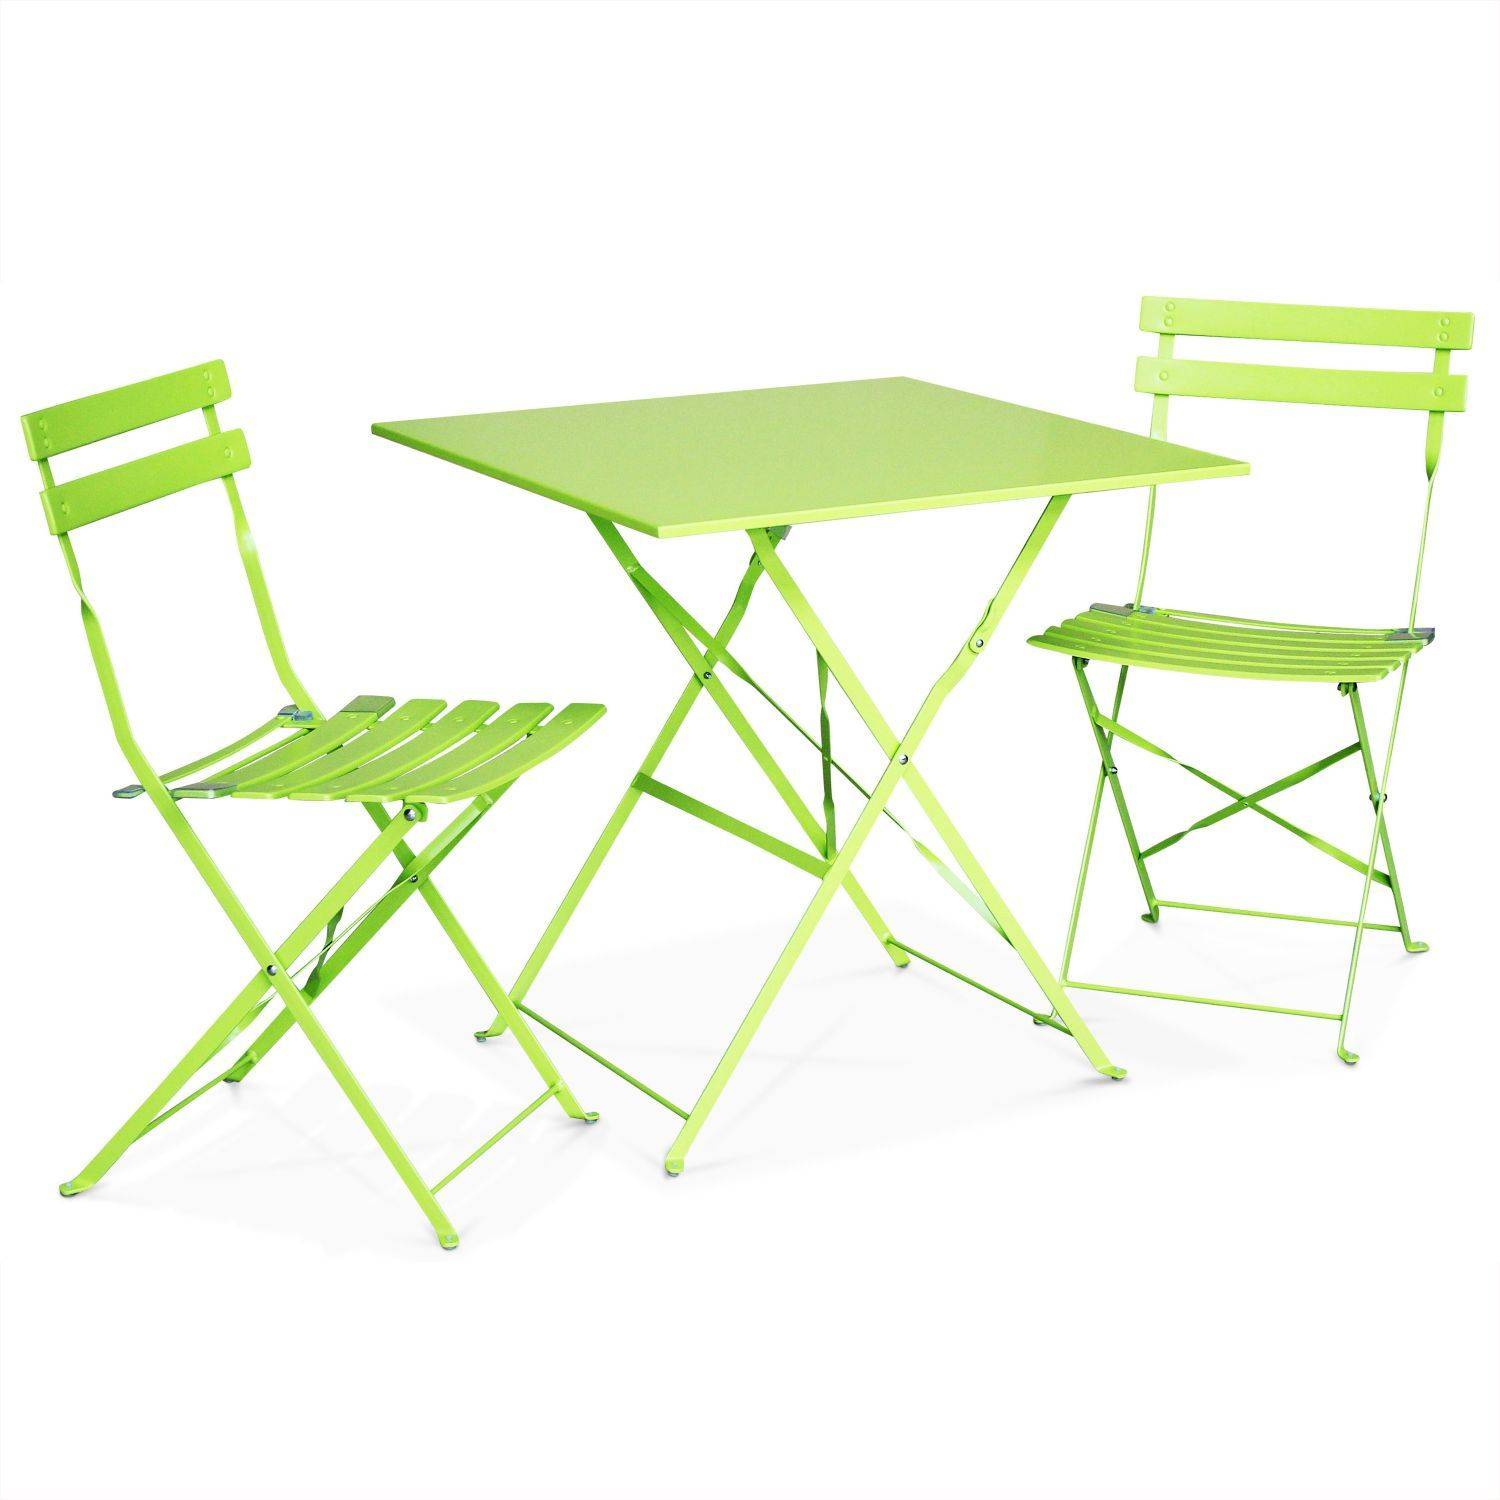 Klappbare Bistro-Gartenmöbel - Emilia quadratisch grün - Quadratischer Tisch 70x70 cm mit zwei Klappstühlen, pulverbeschichtetem Stahl, Stühlen mit gebogenen Latten Photo2